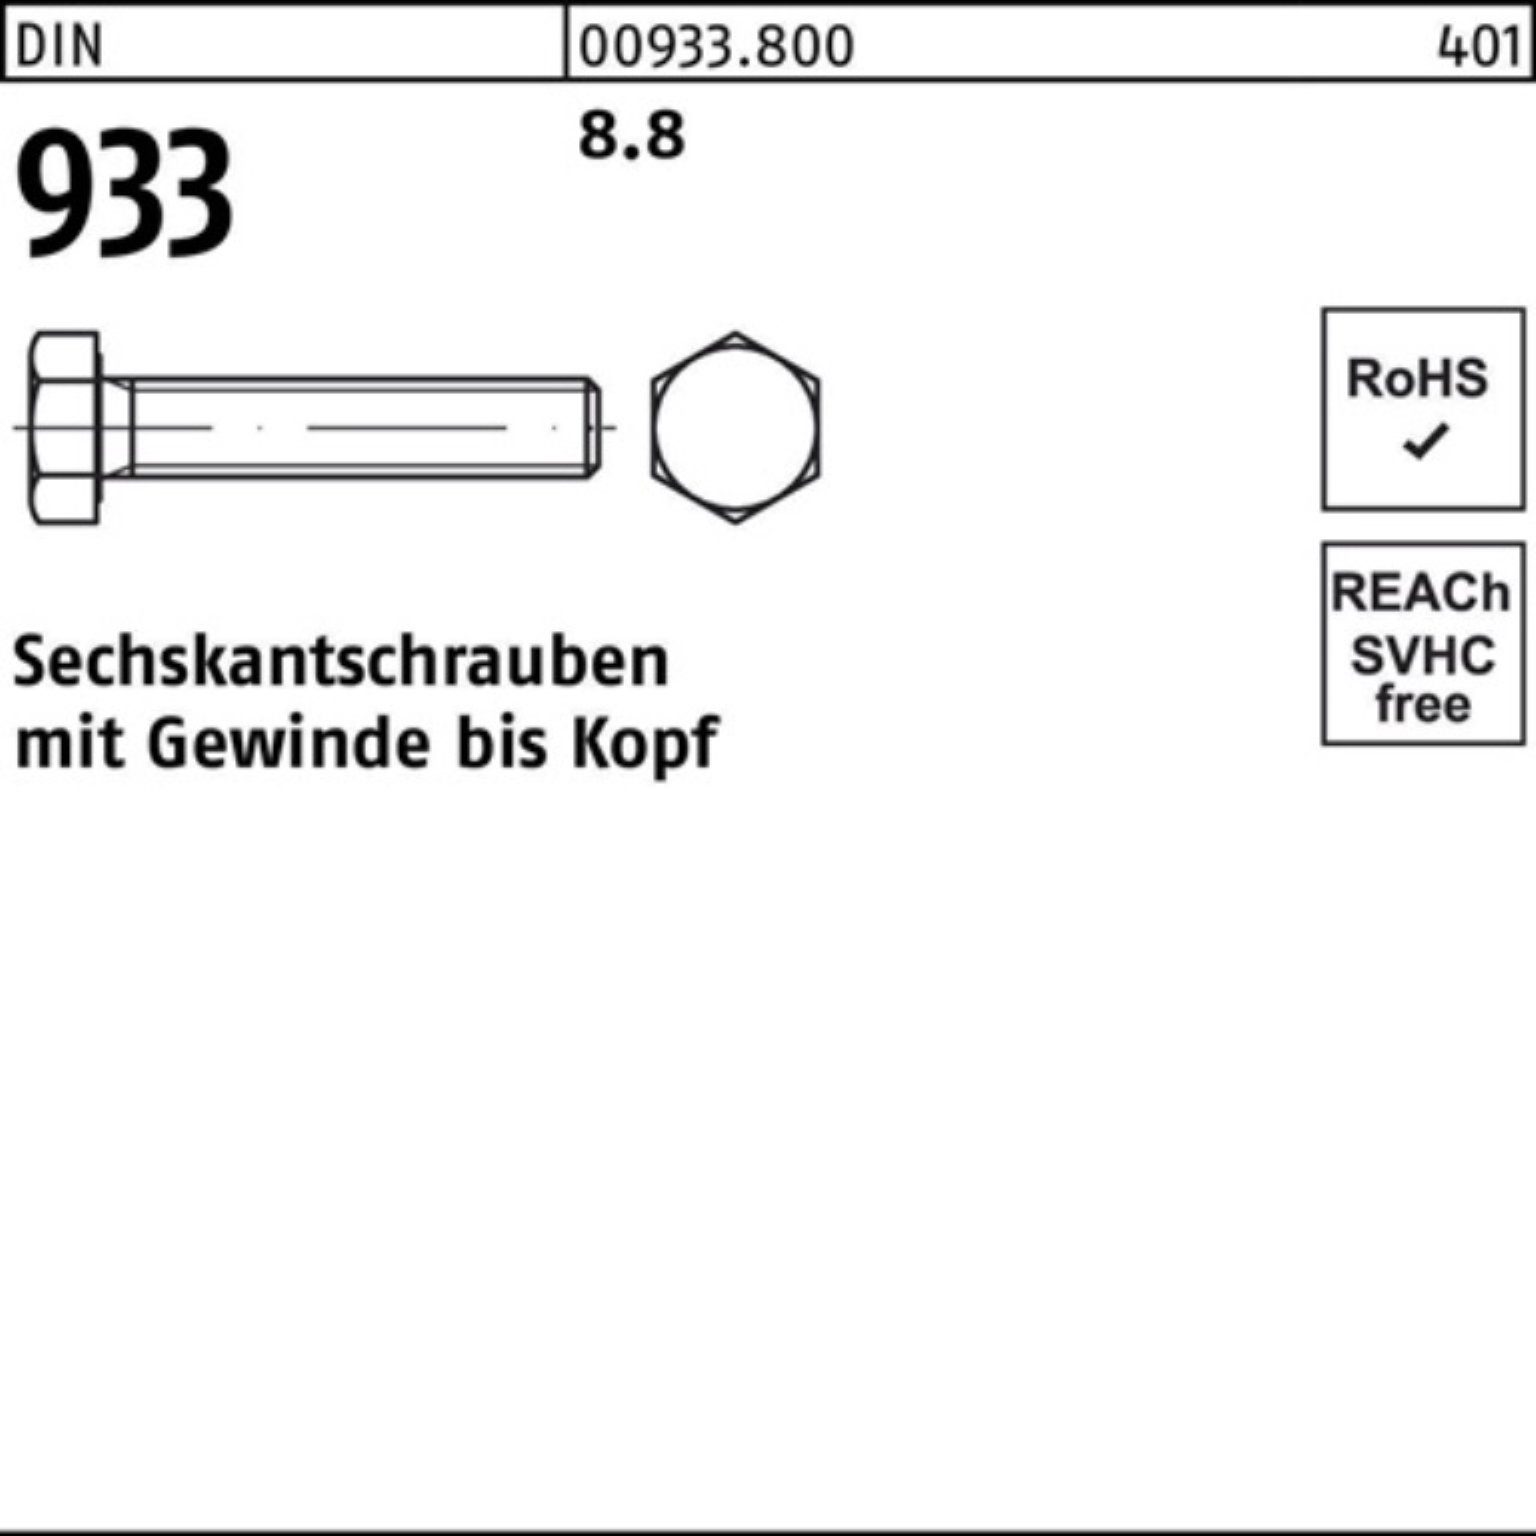 M36x 1 8.8 DIN Sechskantschraube 100er Reyher Sechskantschraube VG 190 DIN Pack 933 933 Stück